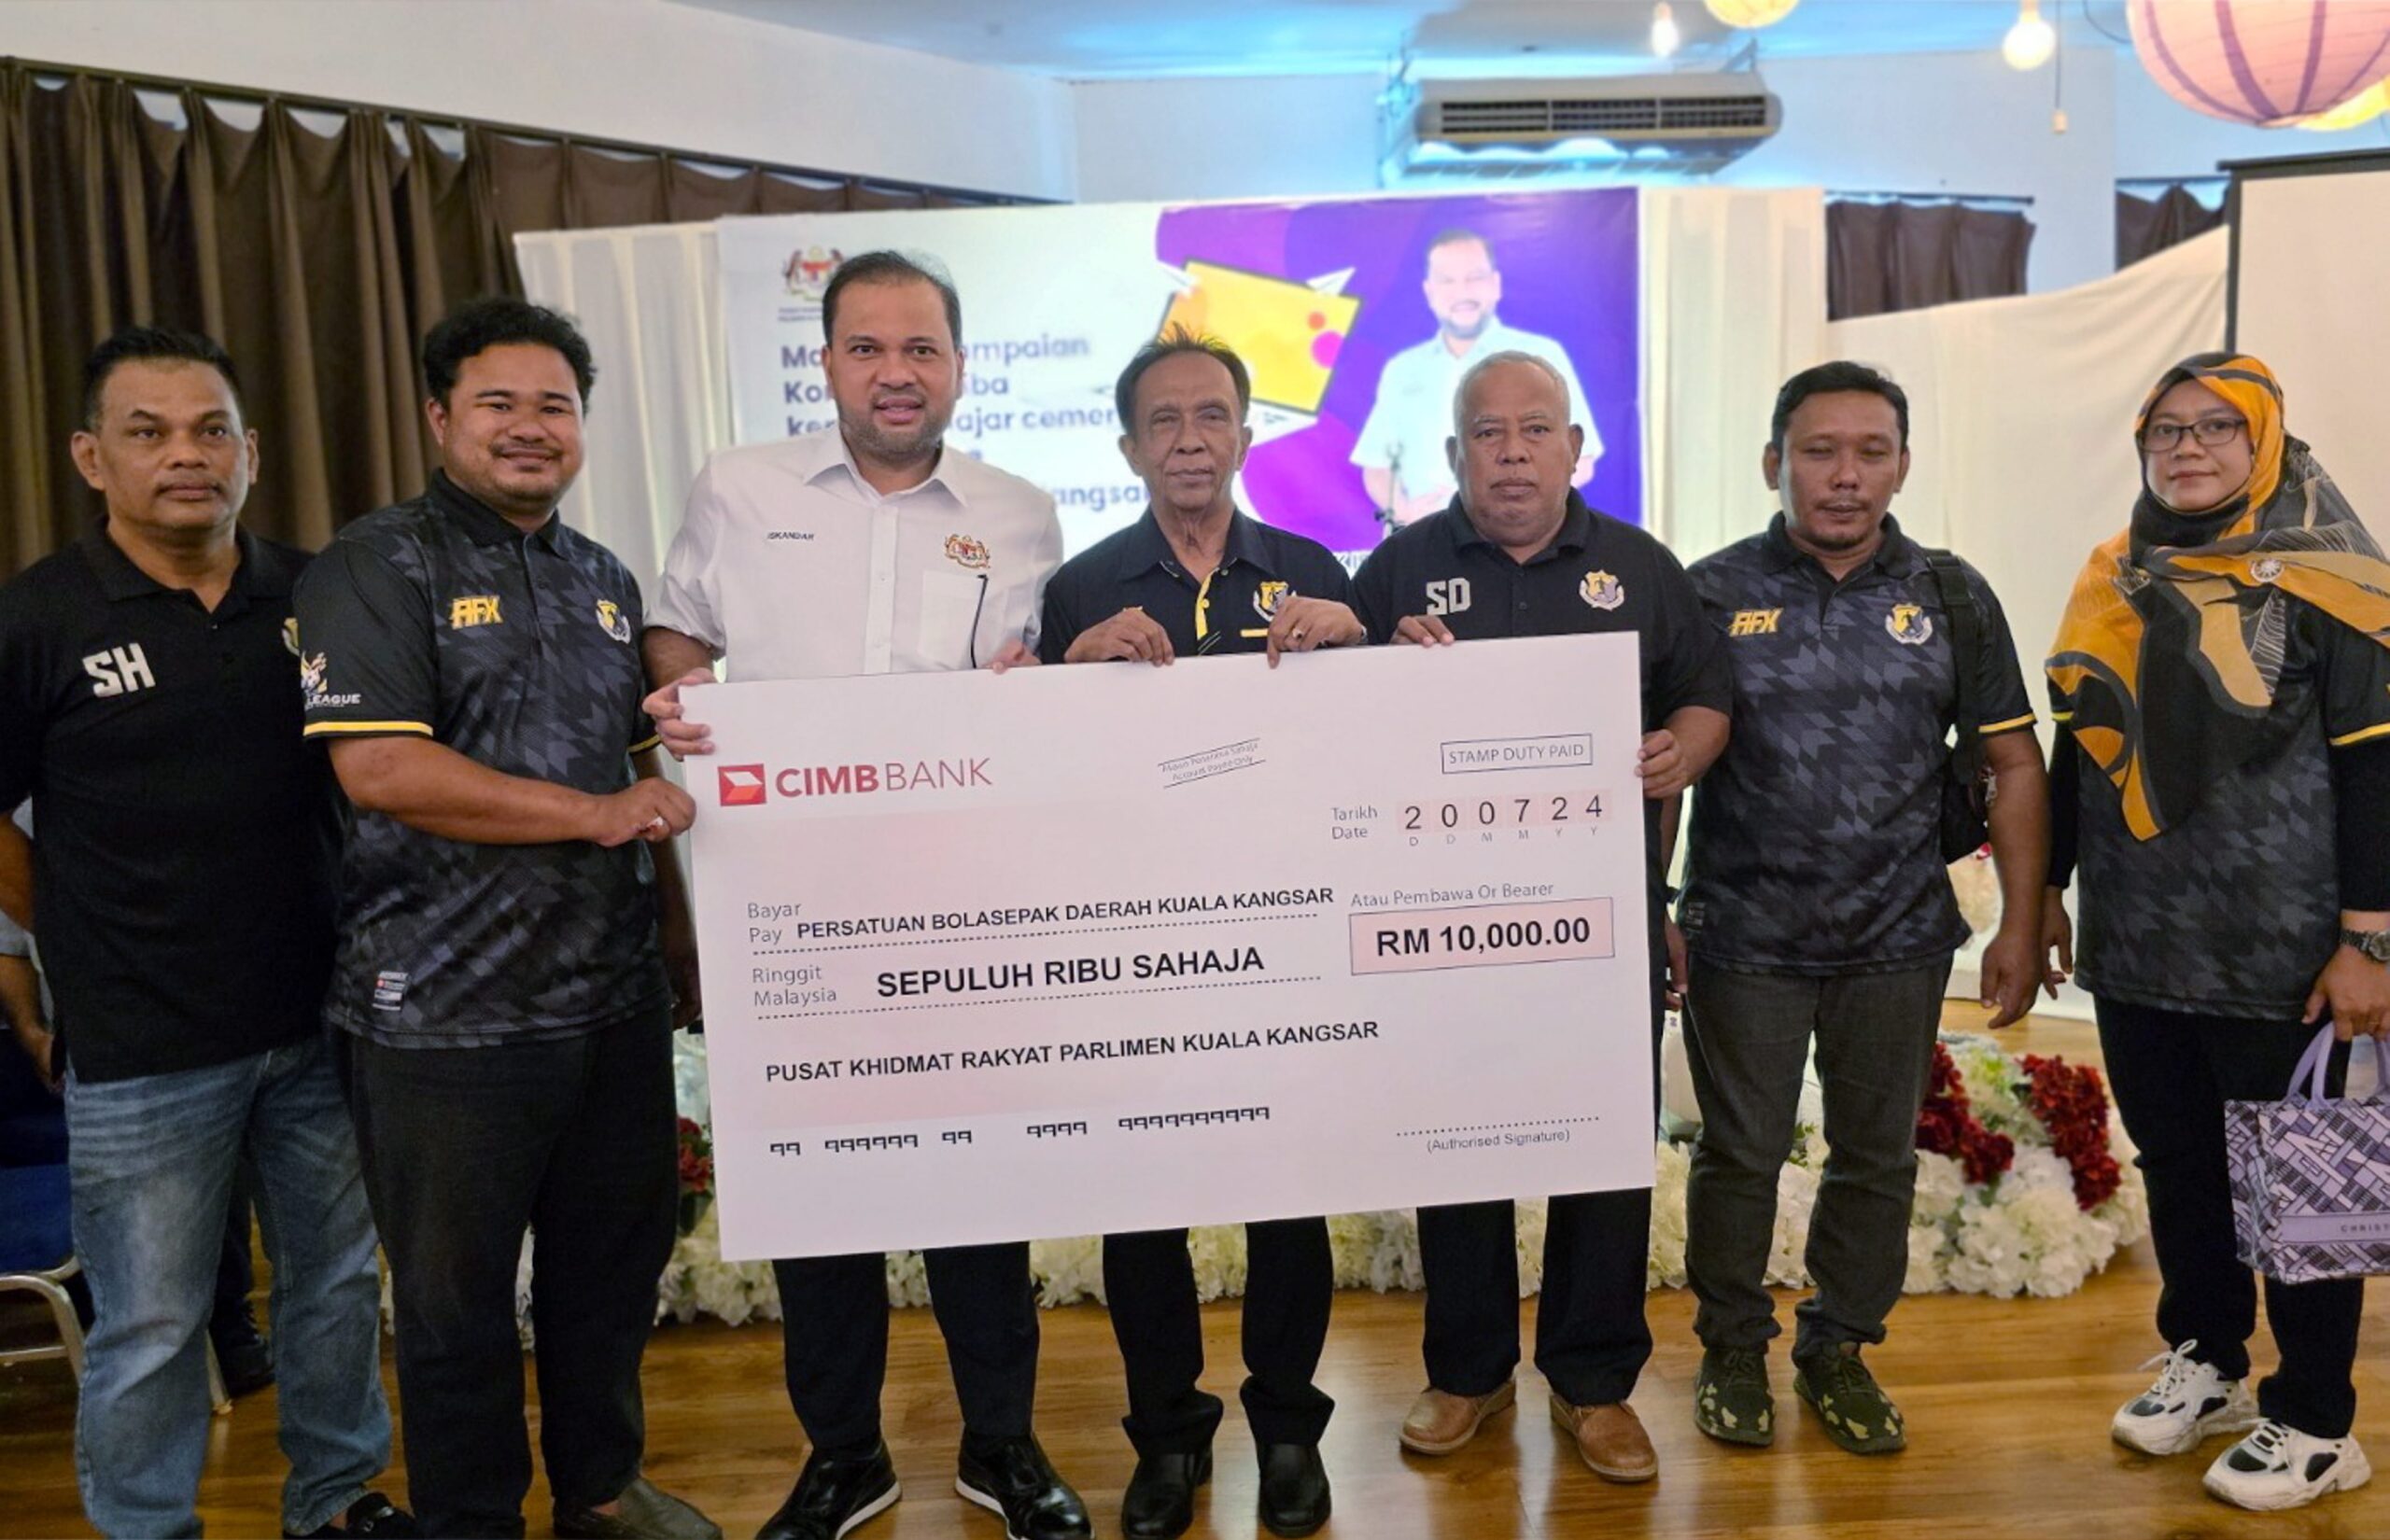 ISKANDAR Dzulkarnain Abdul Khalid (tiga dari kini) bersama wakil Persatuan Bola Sepak Daerah Kuala Kangsar menyampaikan cek kepada persatuan itu di Kuala Kangsar semalam. - UTUSAN/FADZIL ZAINOL